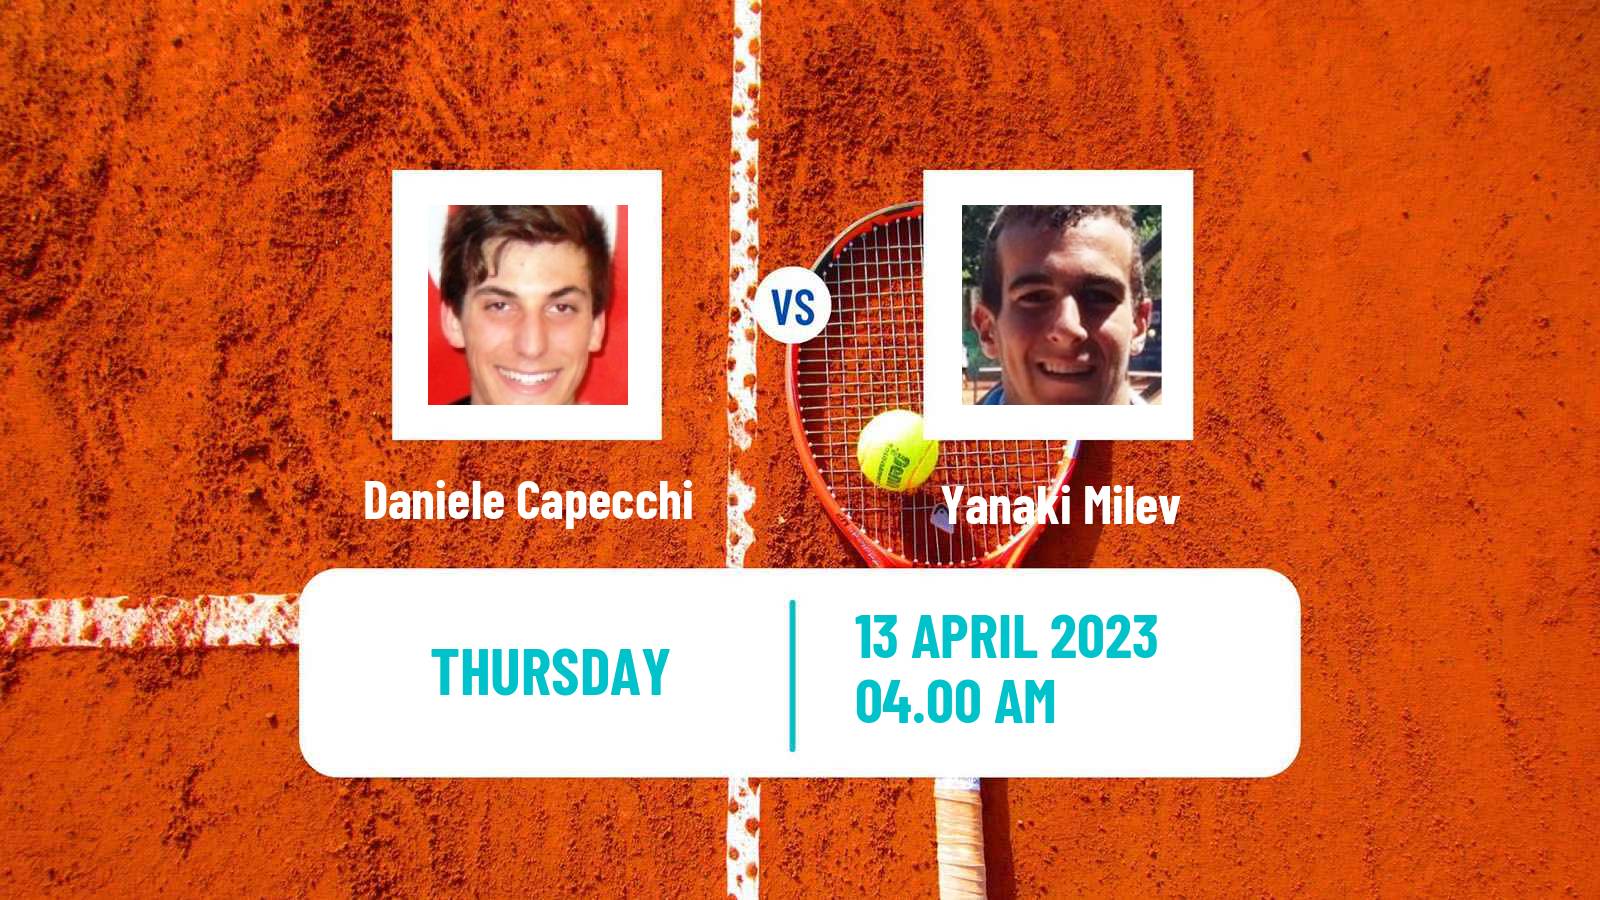 Tennis ITF Tournaments Daniele Capecchi - Yanaki Milev